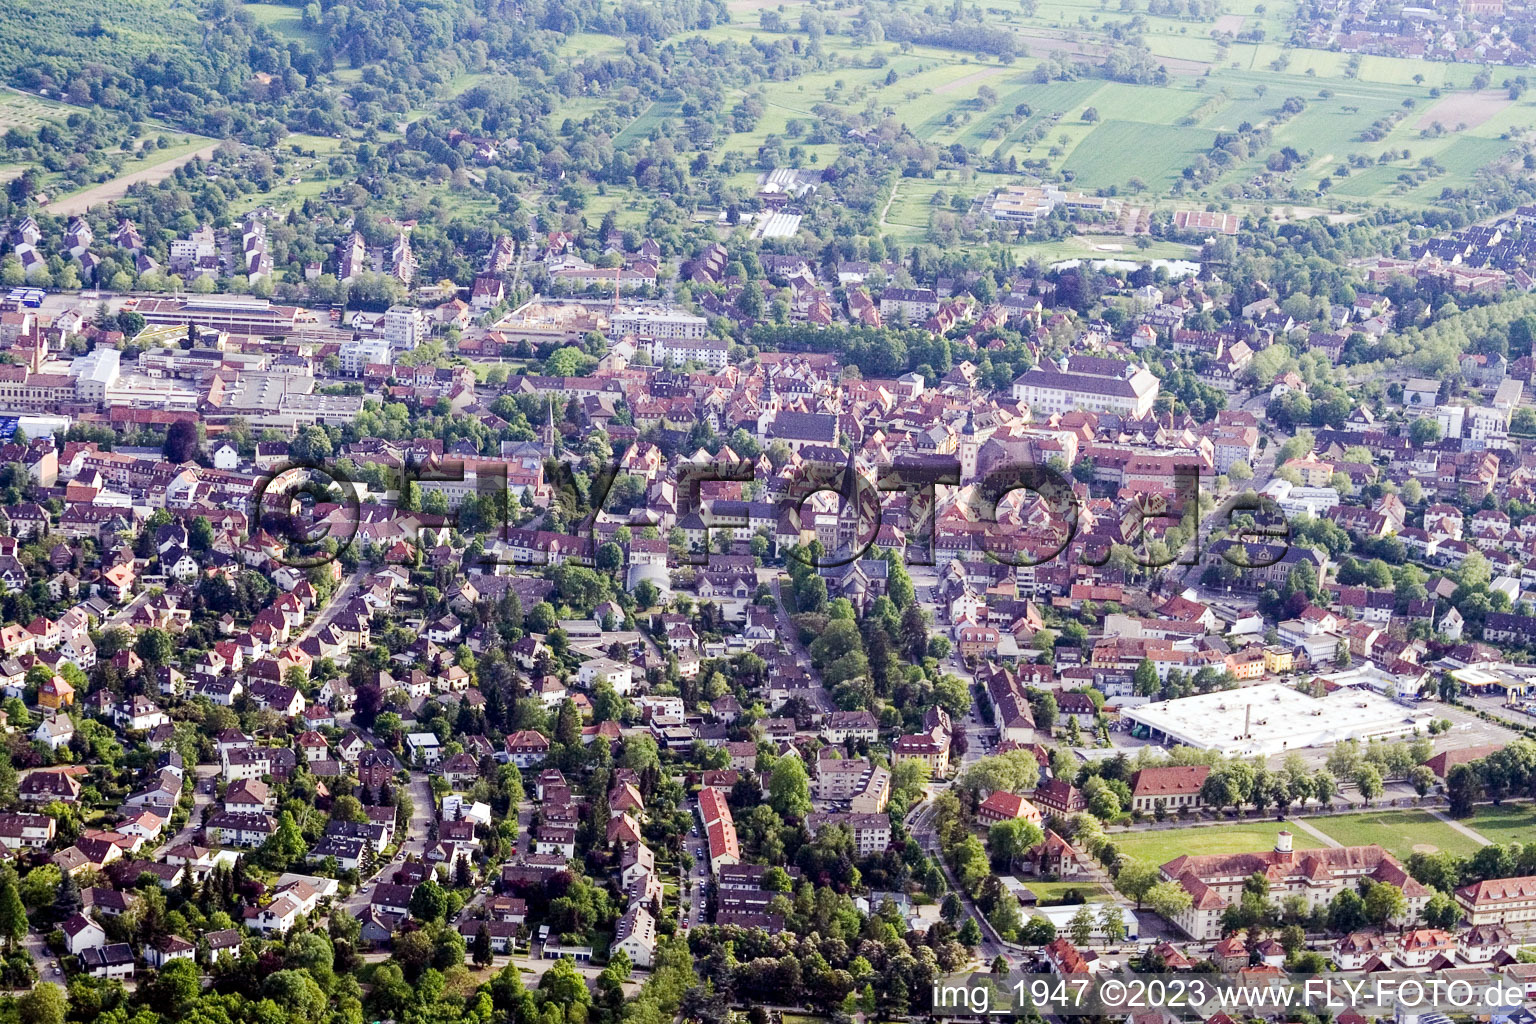 Ettlingen im Bundesland Baden-Württemberg, Deutschland von einer Drohne aus